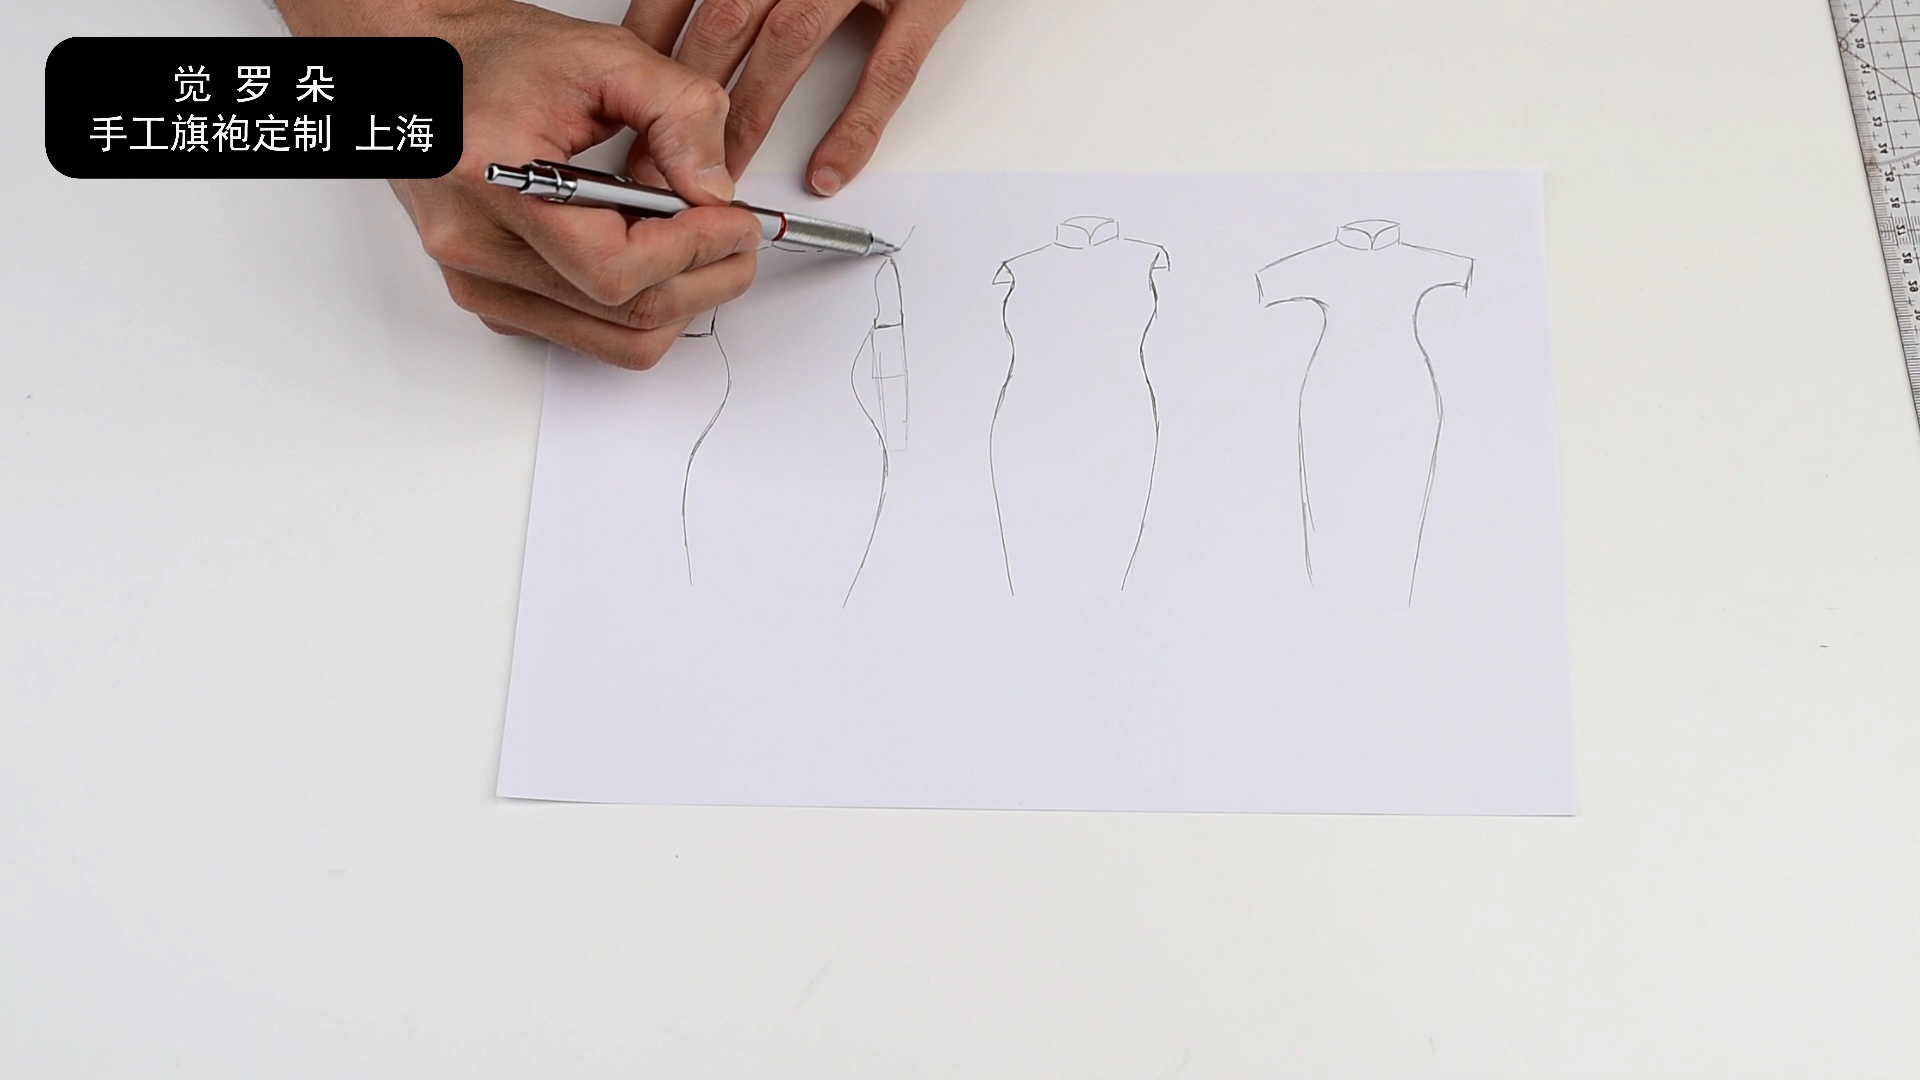 一片式旗袍的详细做法视频 83 - 觉罗朵-晓裁艺-学做手工旗袍视频教程